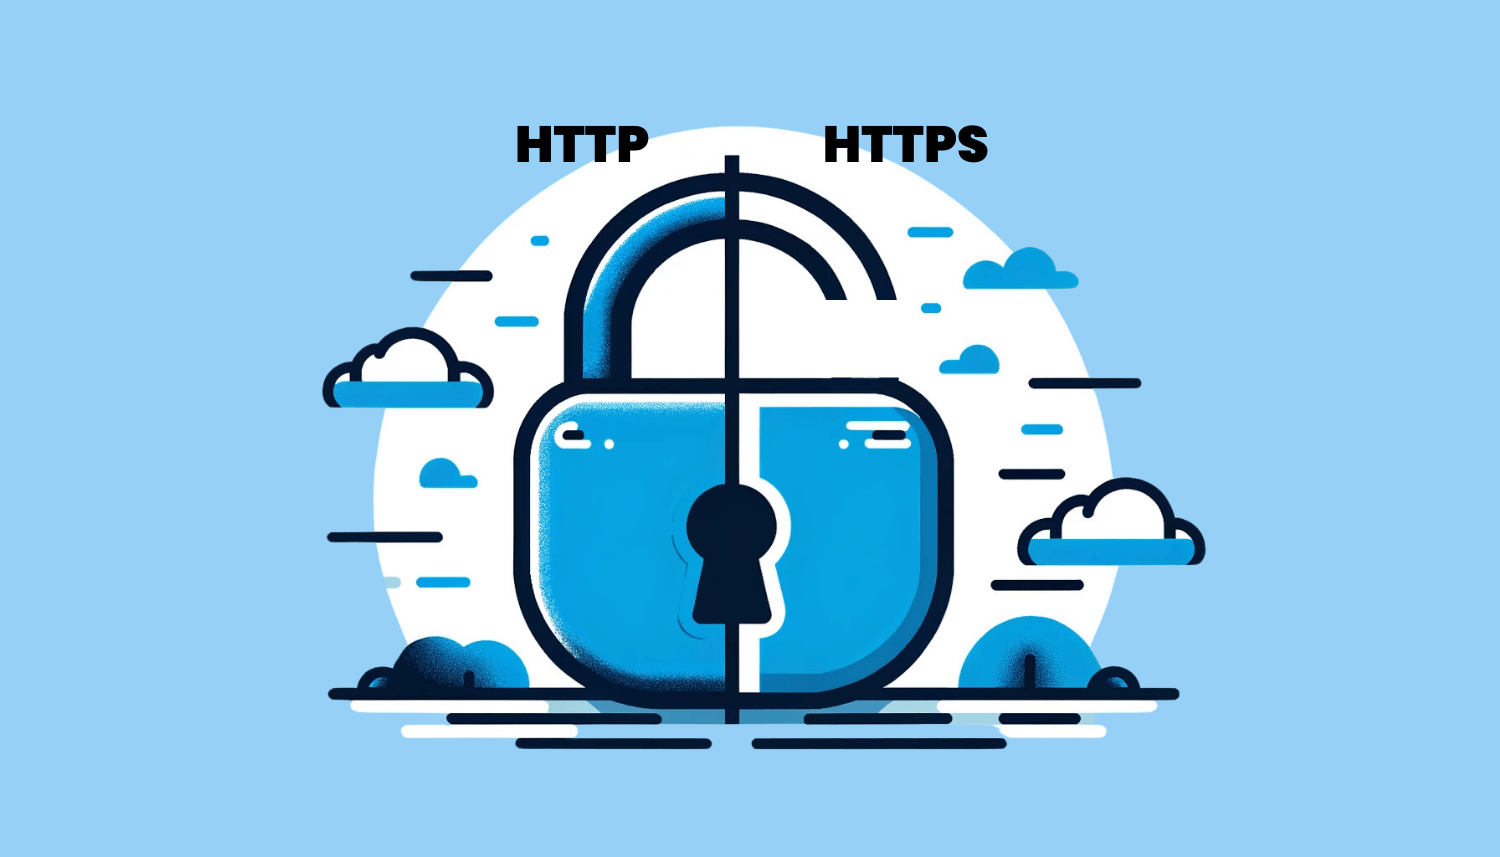 Ilustrasi perbedaan HTTP dan HTTPS dengan gembok terbuka dan tertutup.